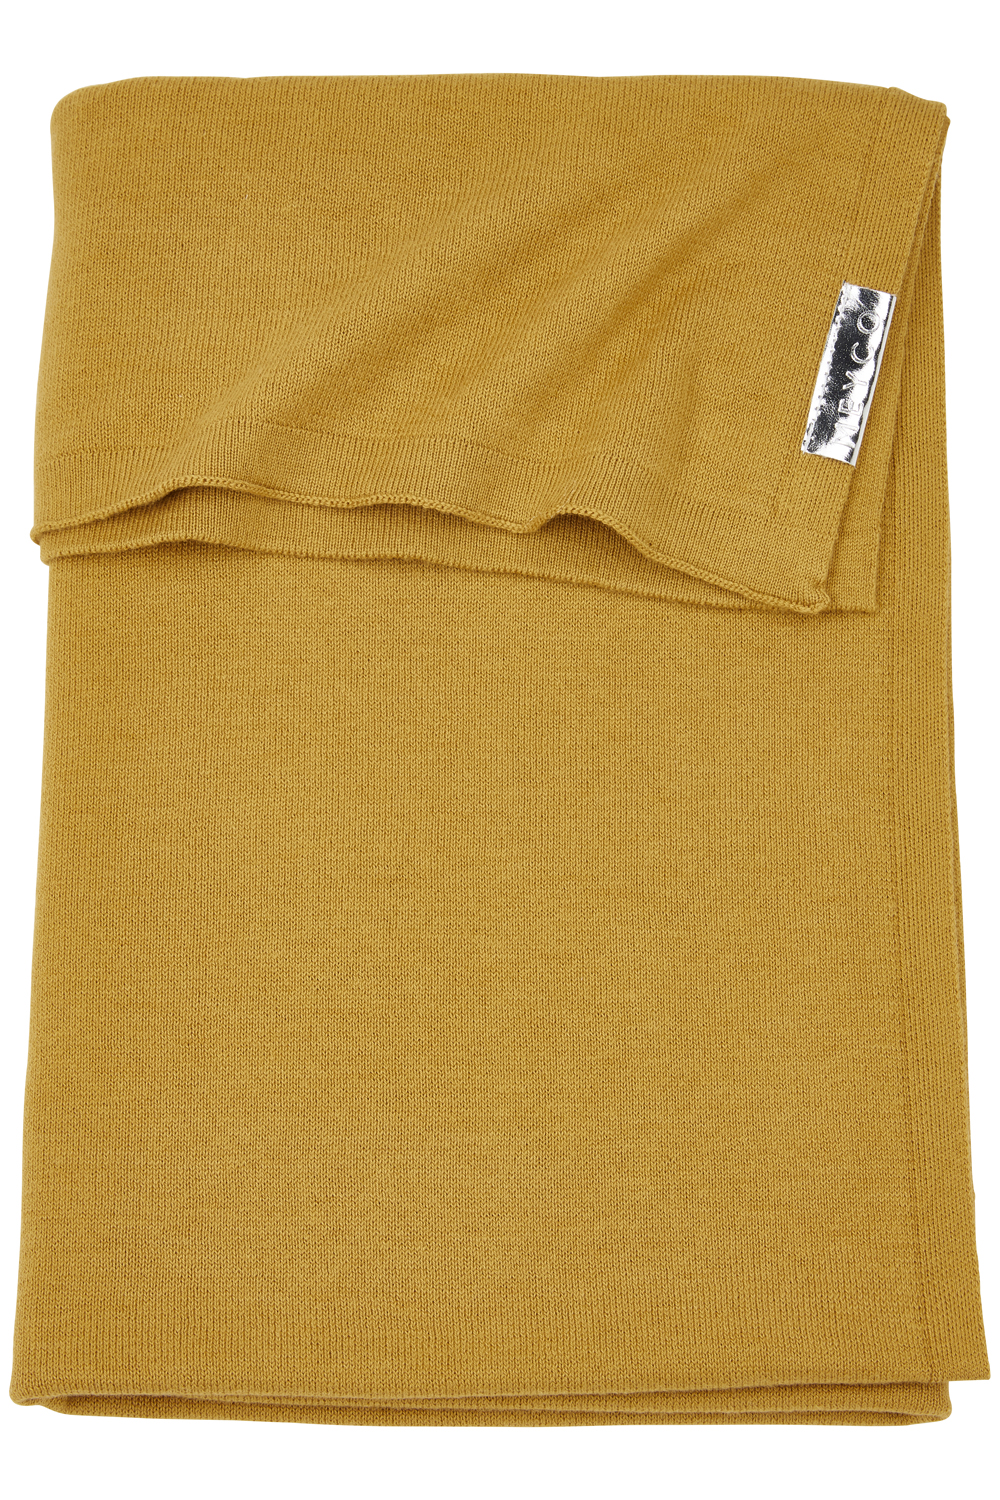 Babydecke Knit Basic - honey gold - 75x100cm